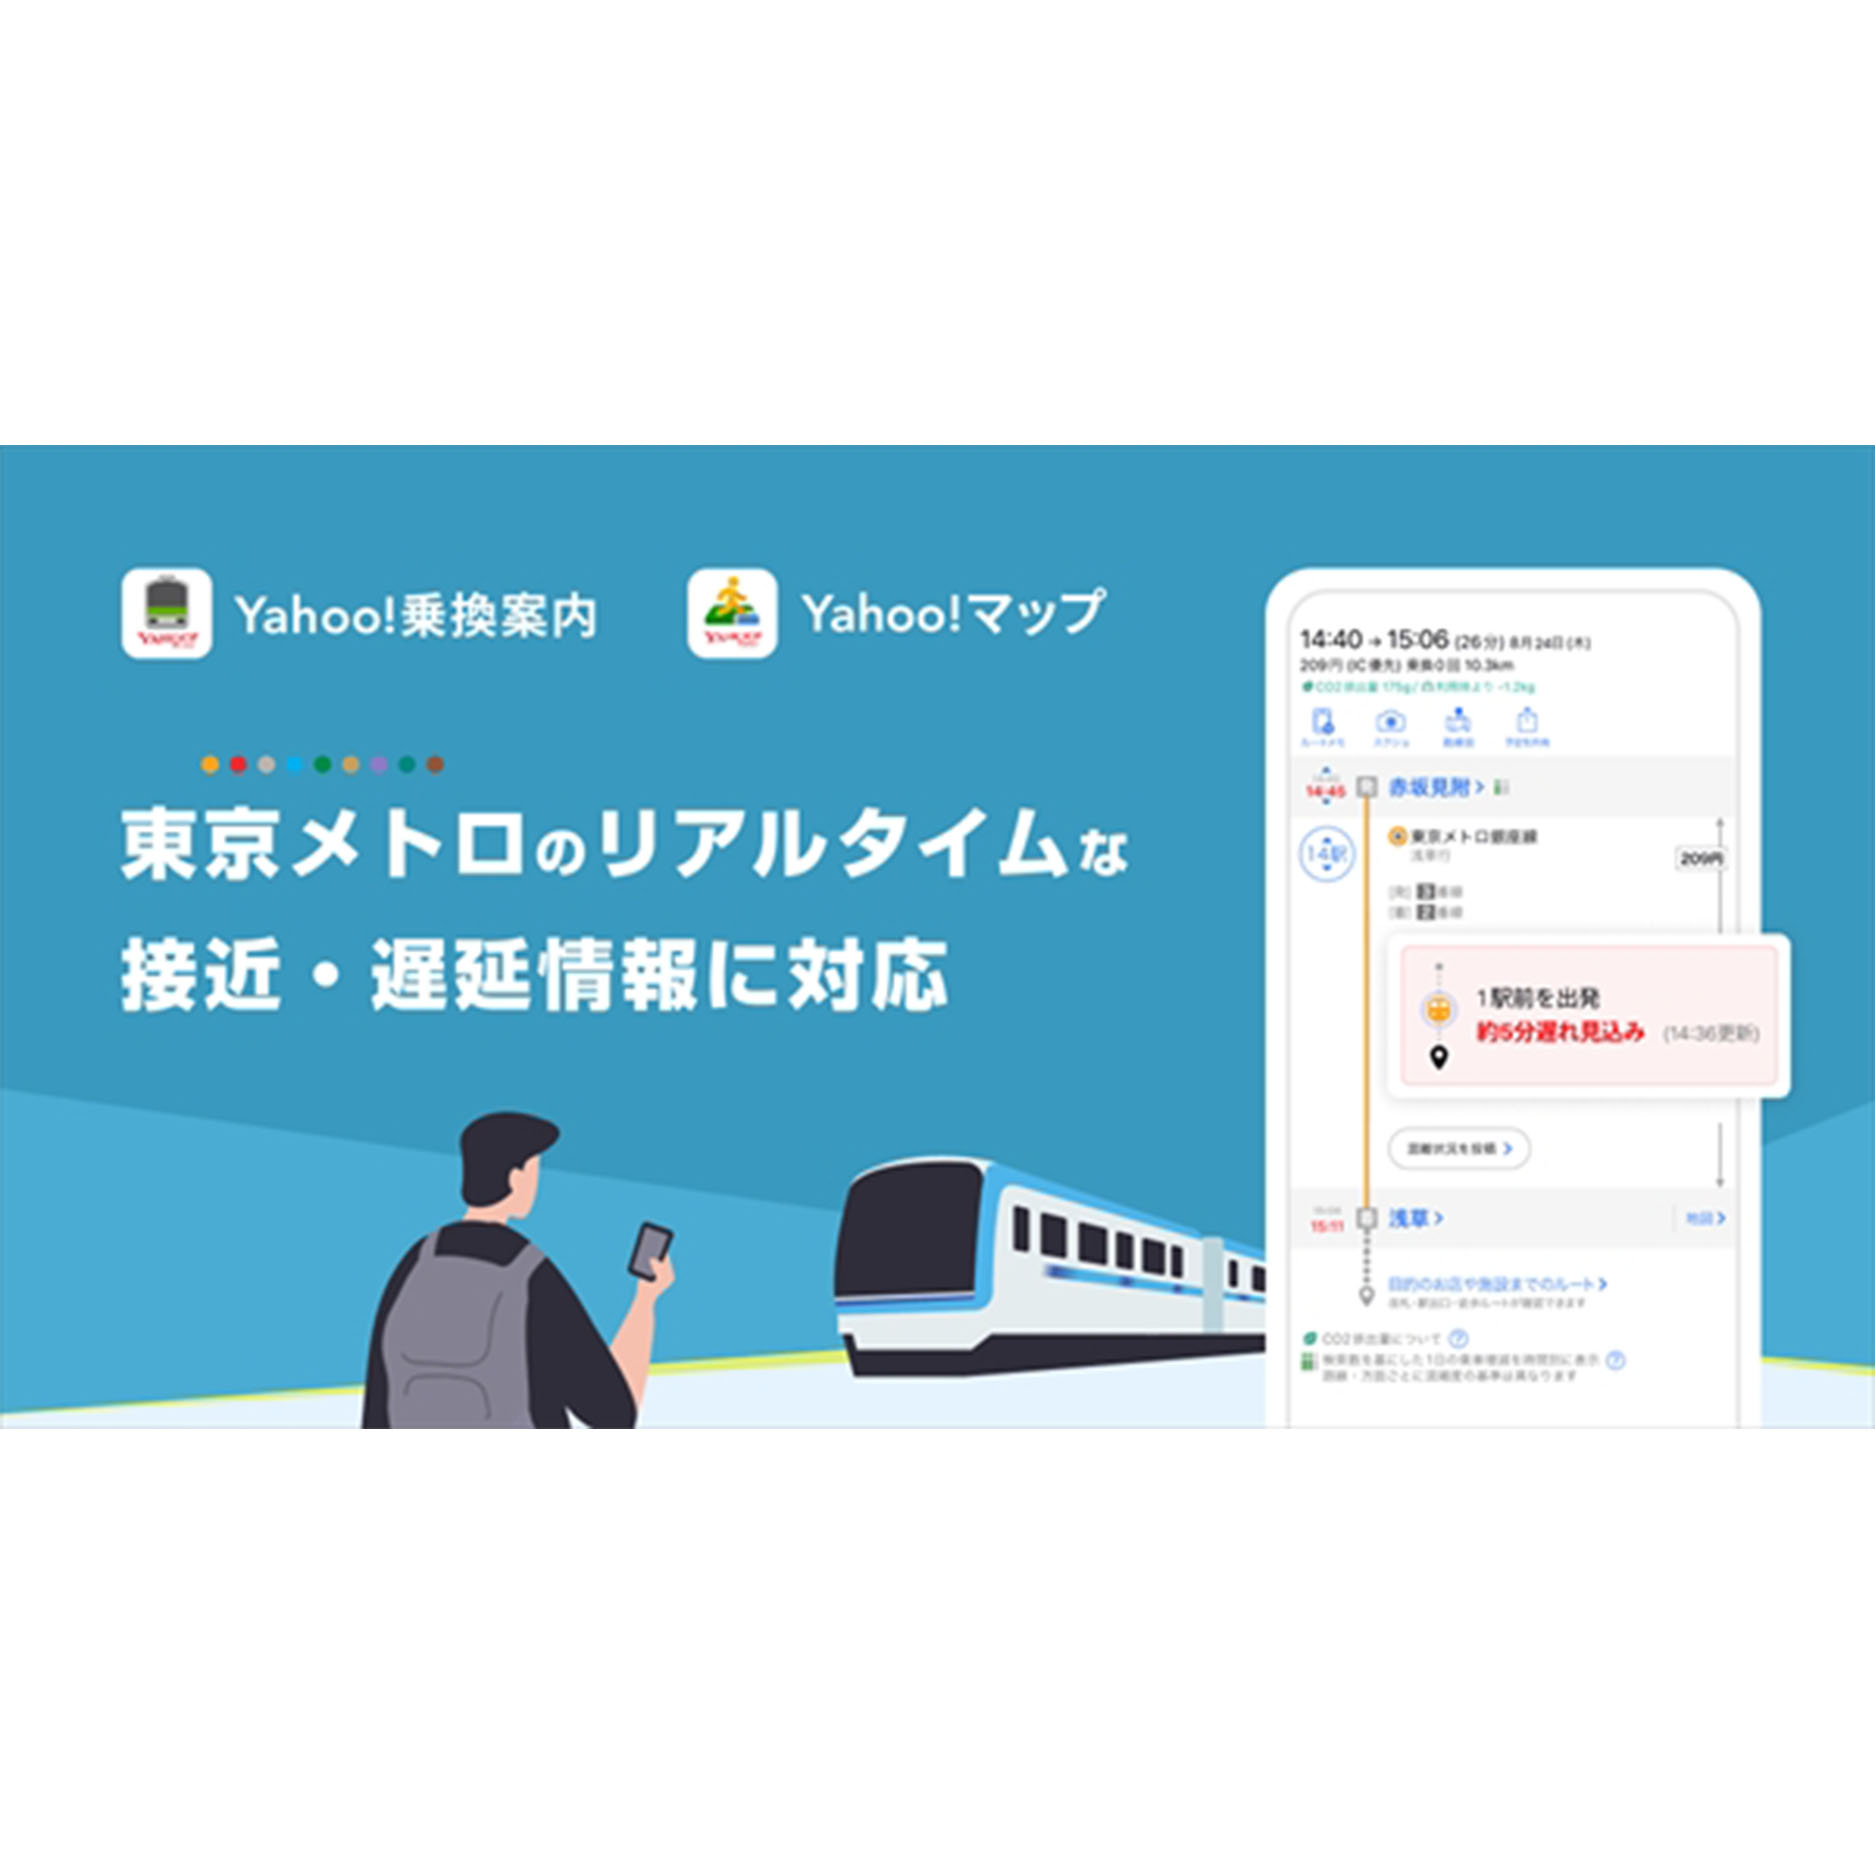 東京メトロの運行情報がリアルタイムで分かる！　Yahoo!乗換案内・マップで新機能提供開始